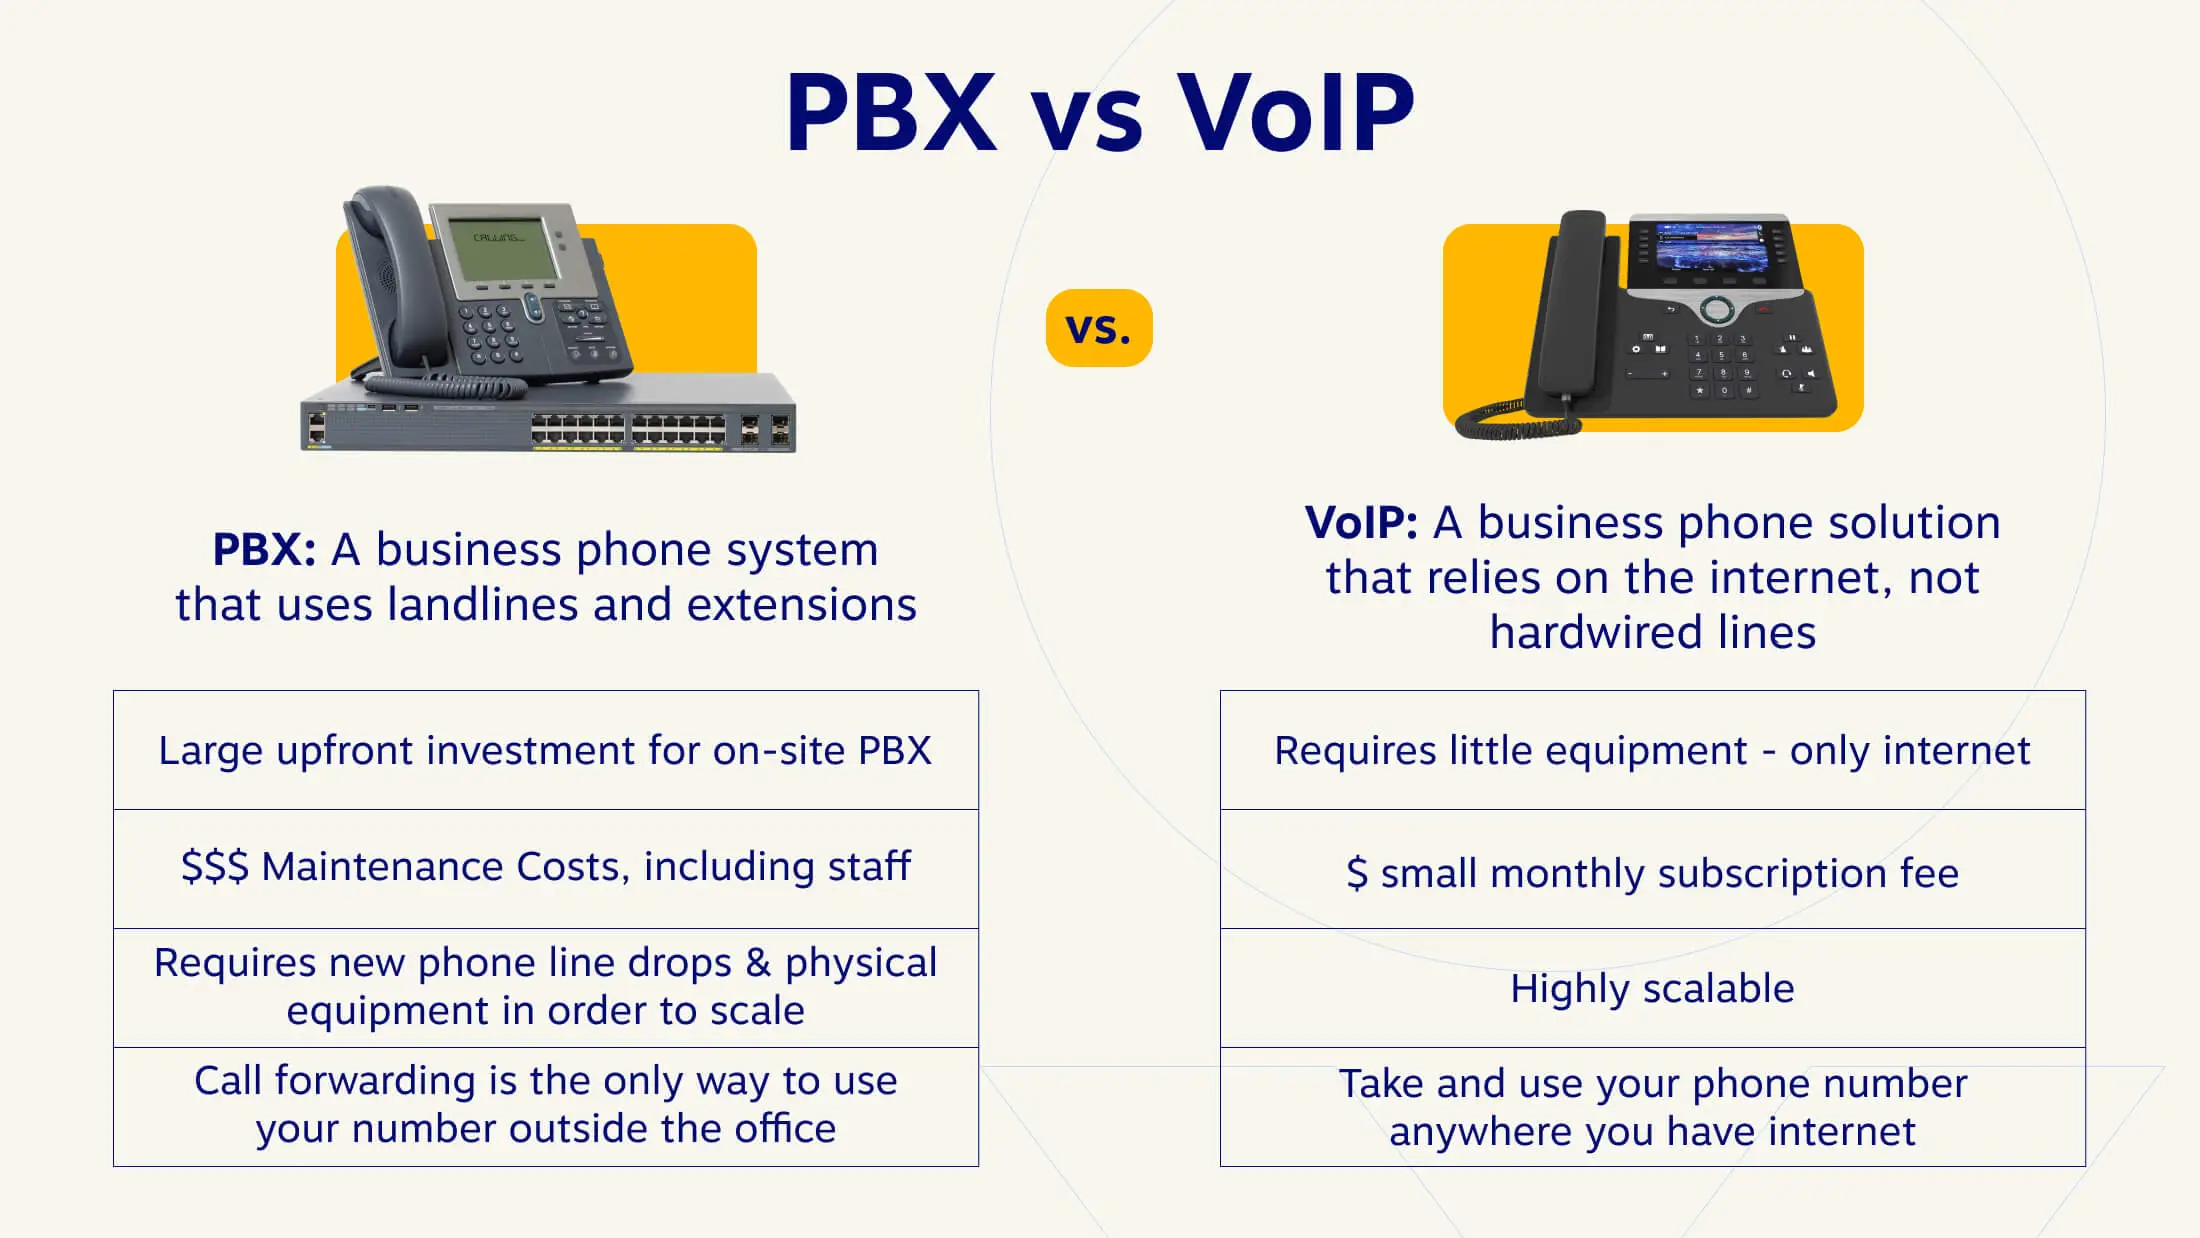 PBX VoIP Un sistem telefonic de afaceri care folosește linii fixe și extensii O soluție telefonică de afaceri care se bazează pe internet, nu pe linii cablate Investiție inițială mare pentru PBX la fața locului Necesită echipamente reduse - doar internet $$$ Costuri de întreținere, inclusiv personal $ abonament lunar mic taxă Necesită noi linii telefonice și echipamente fizice pentru a se extinde Redirecționarea apelurilor foarte scalabilă este singura modalitate de a vă folosi numărul în afara biroului Luați și utilizați numărul de telefon oriunde aveți internet